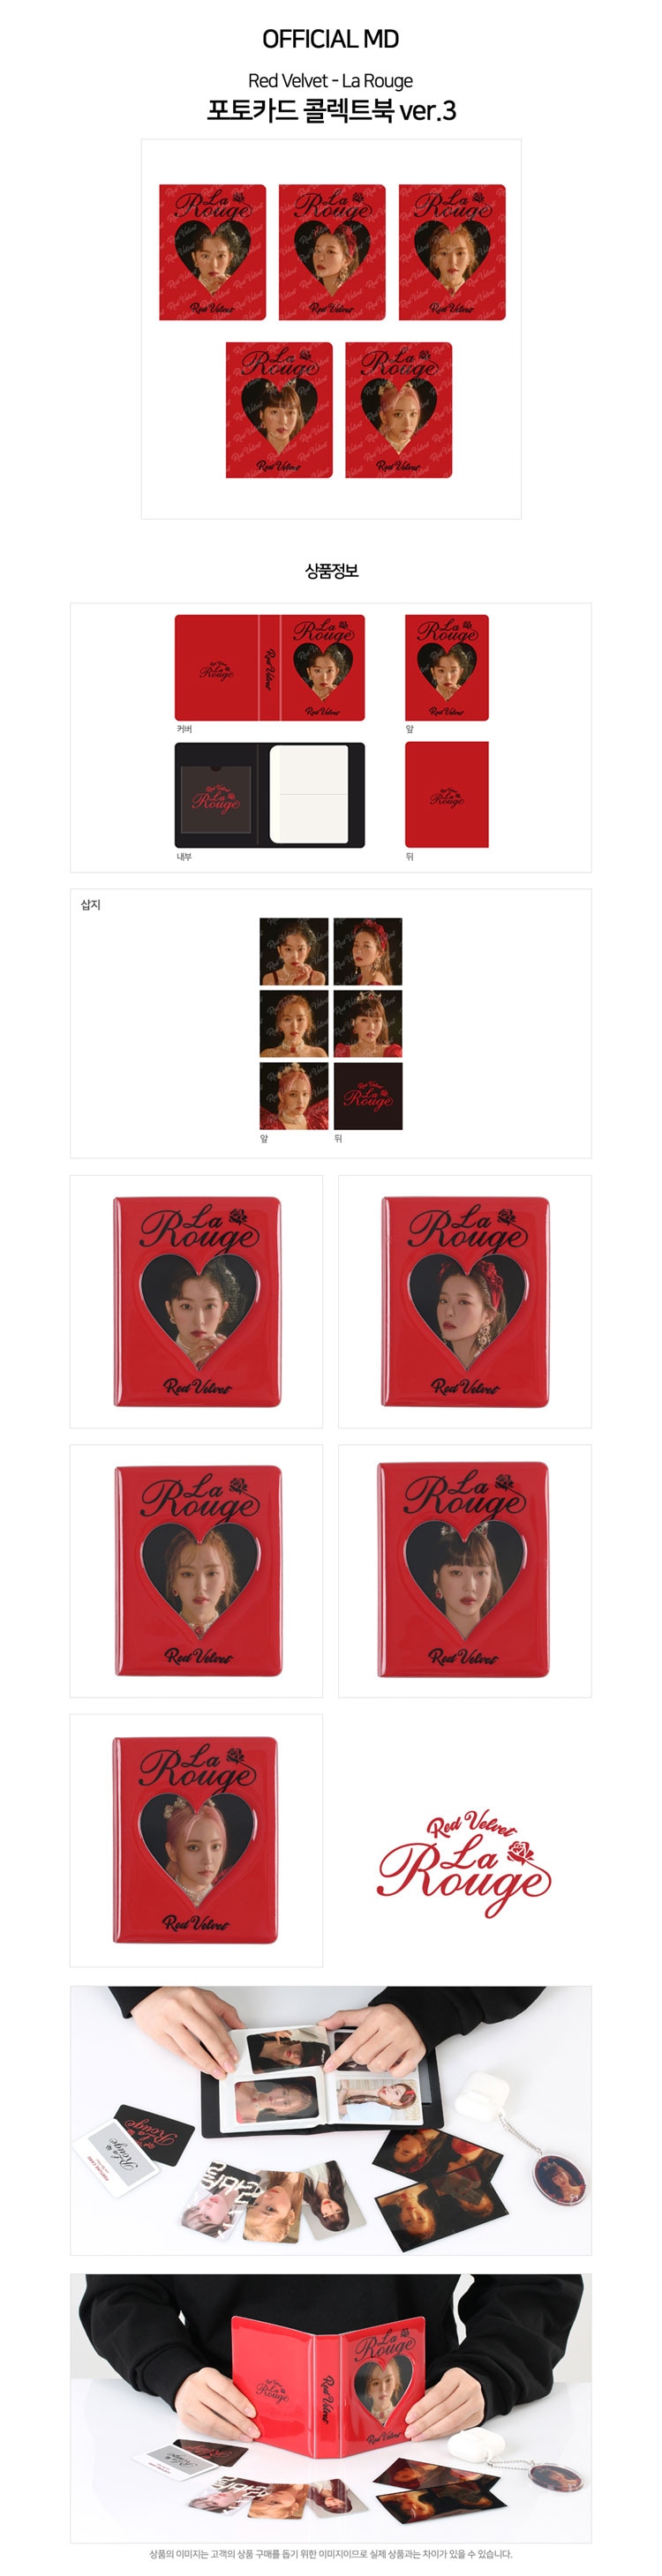 予約】RED VELVET PHOTOCARD COLLECT BOOK VER3「Red Velvet - La